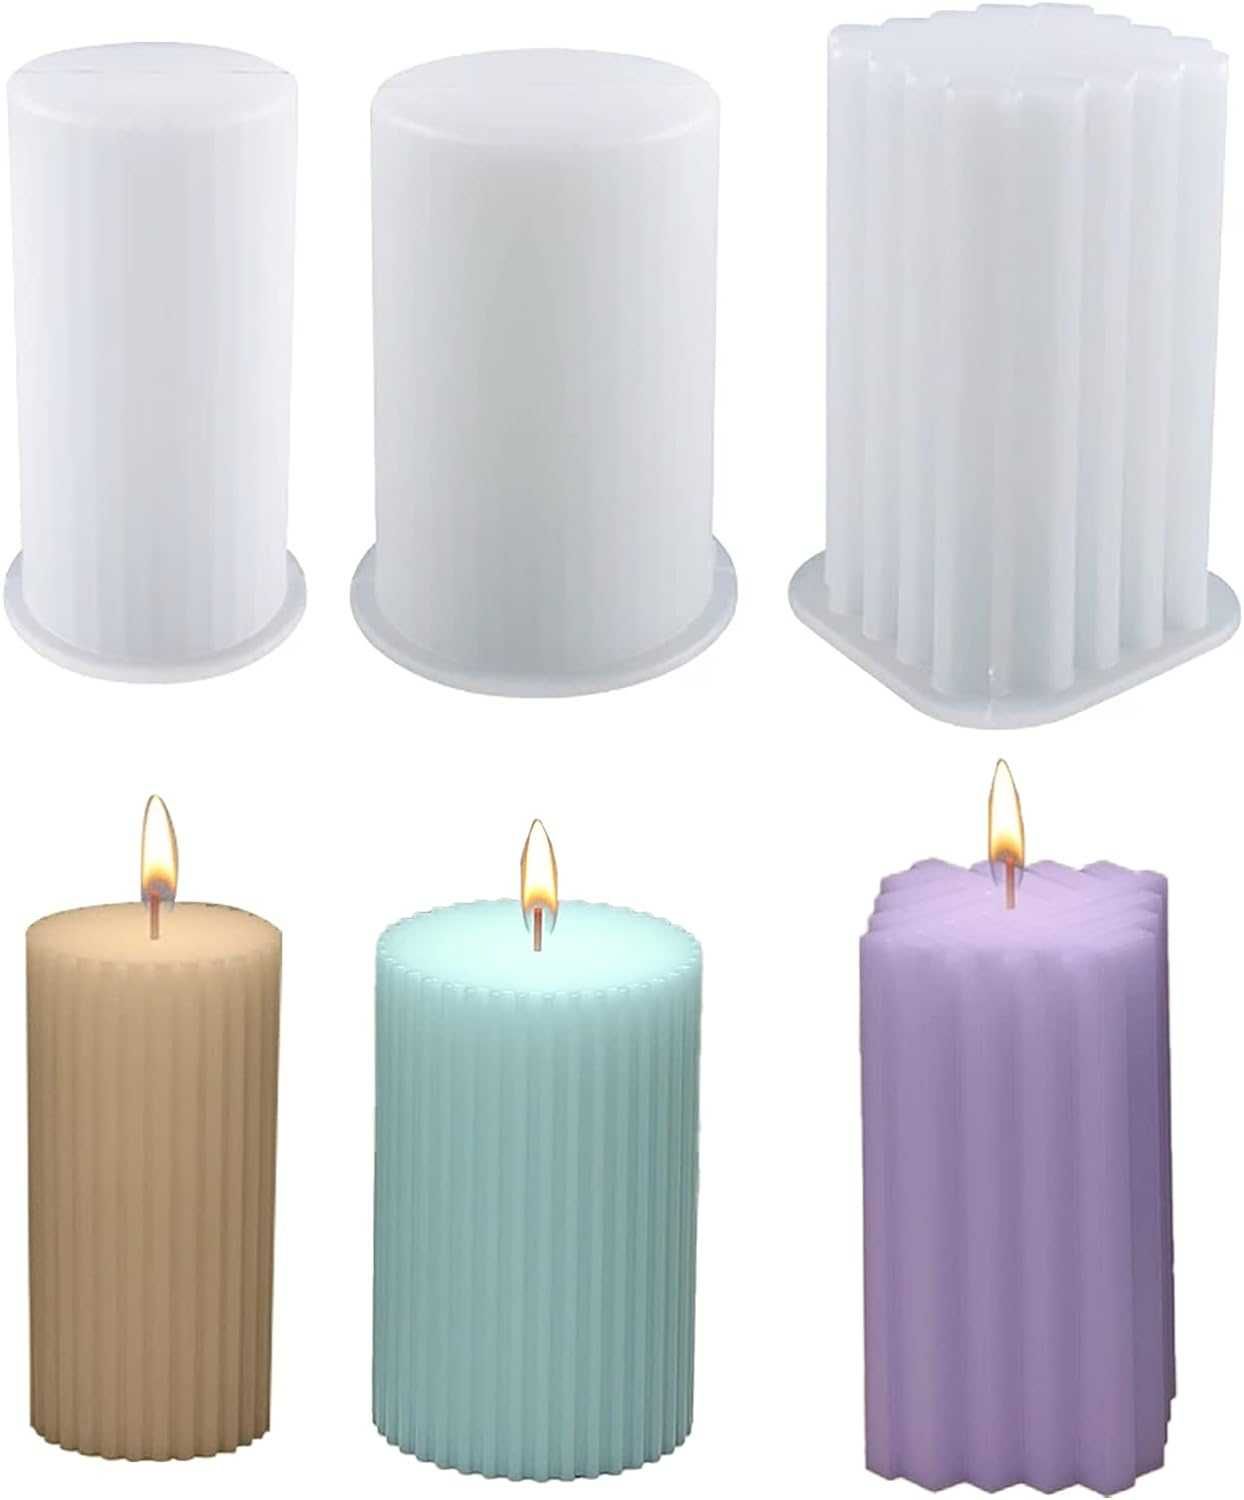 3 sztuki foremek do świec cylindrycznych do odlewania świec